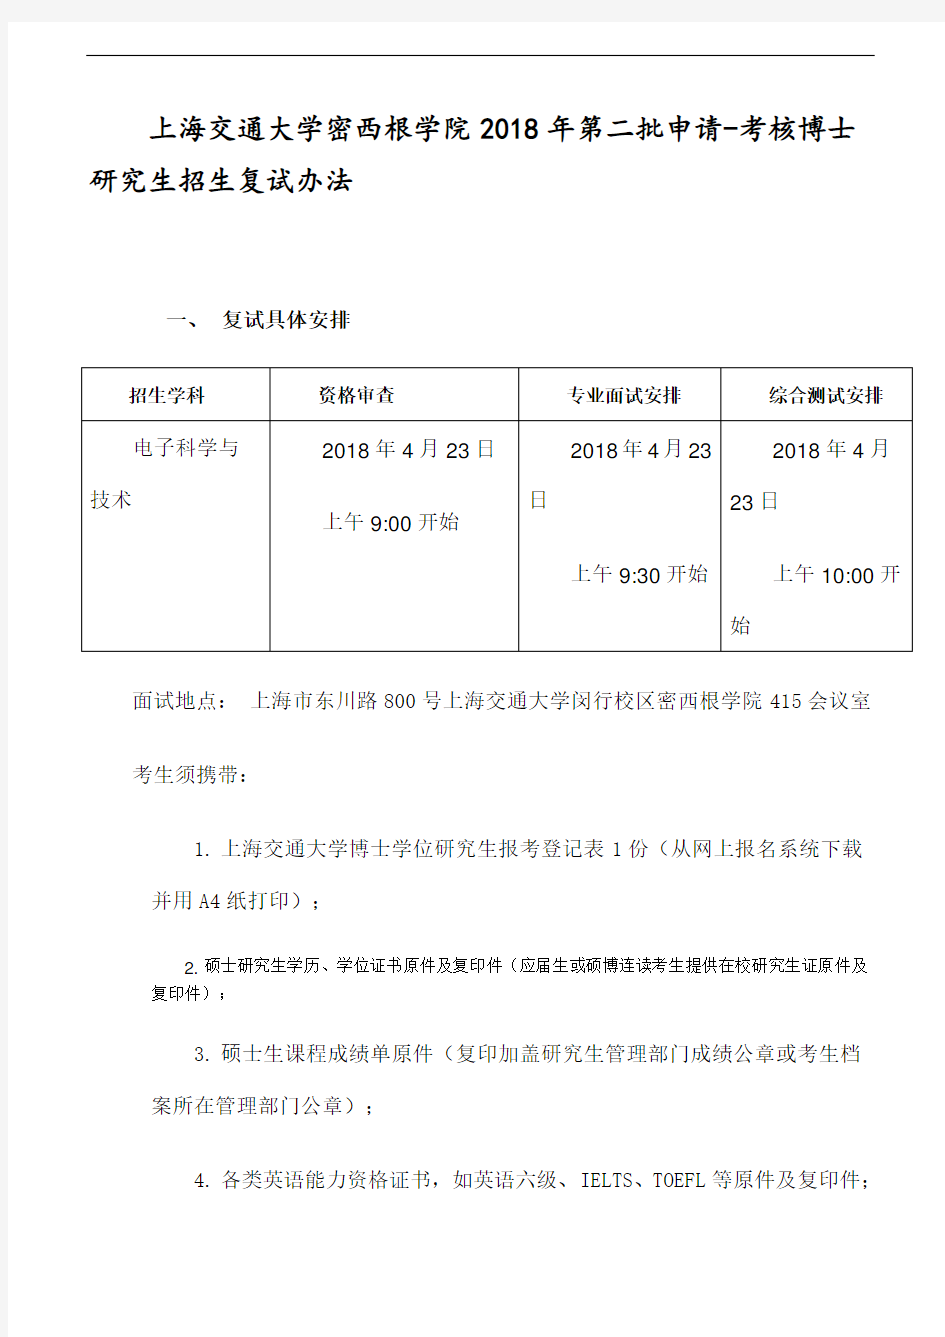 上海交通大学密西根学院2018年第二批申请-考核博士研究生招生复试办法